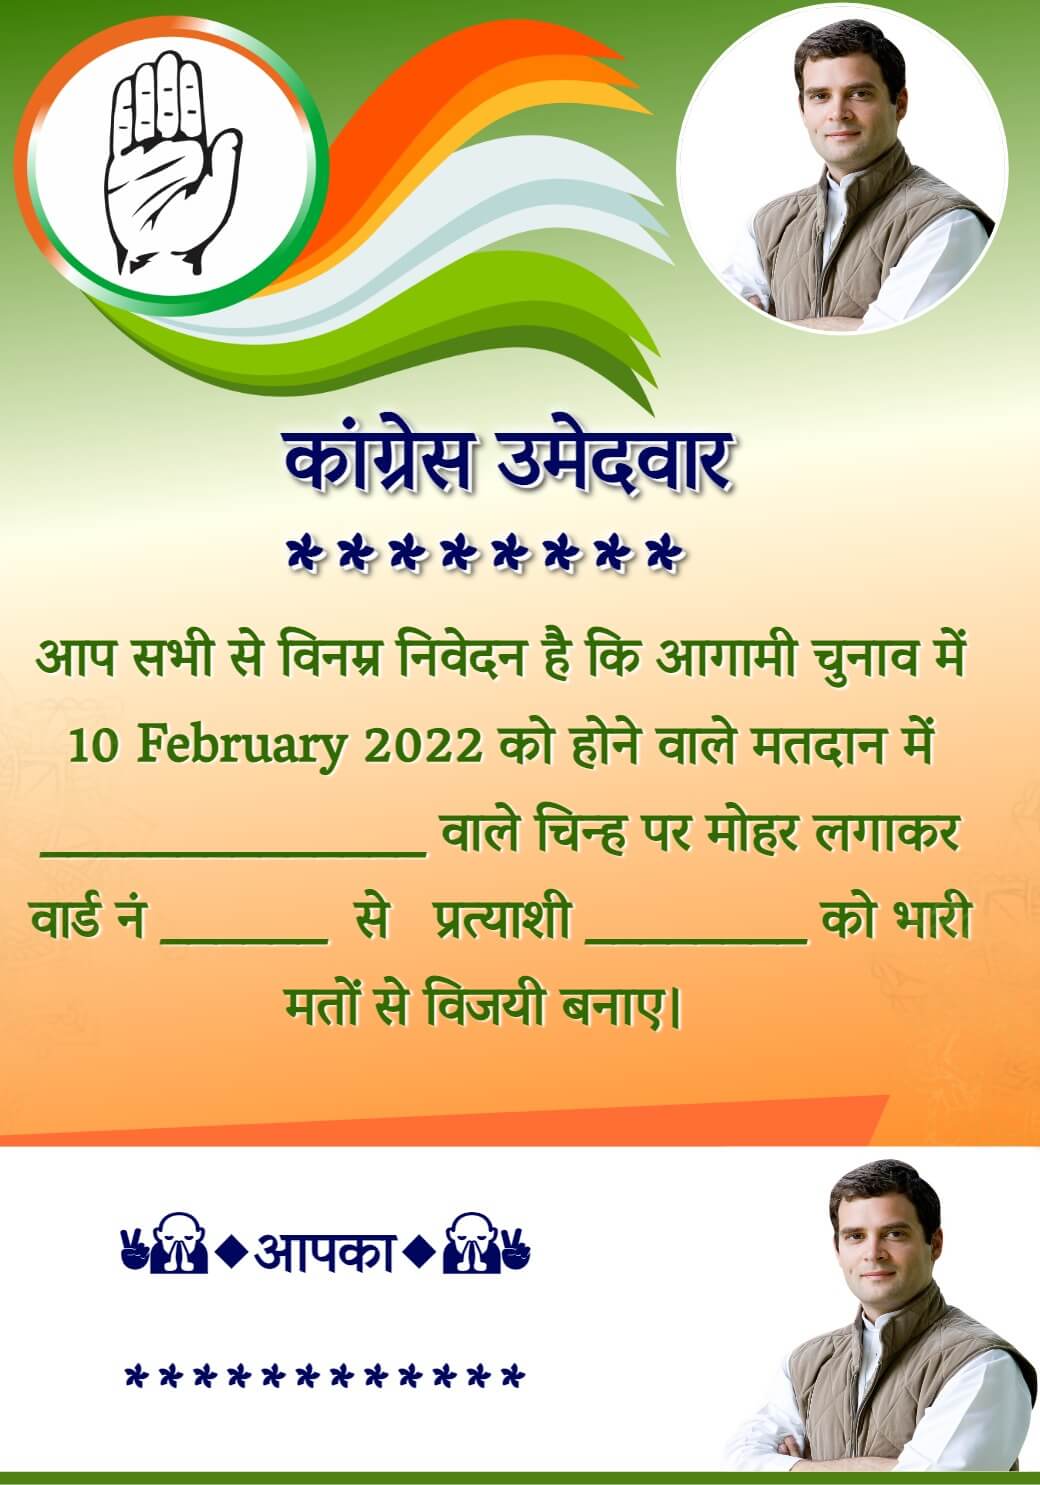 election-banner-card-congress